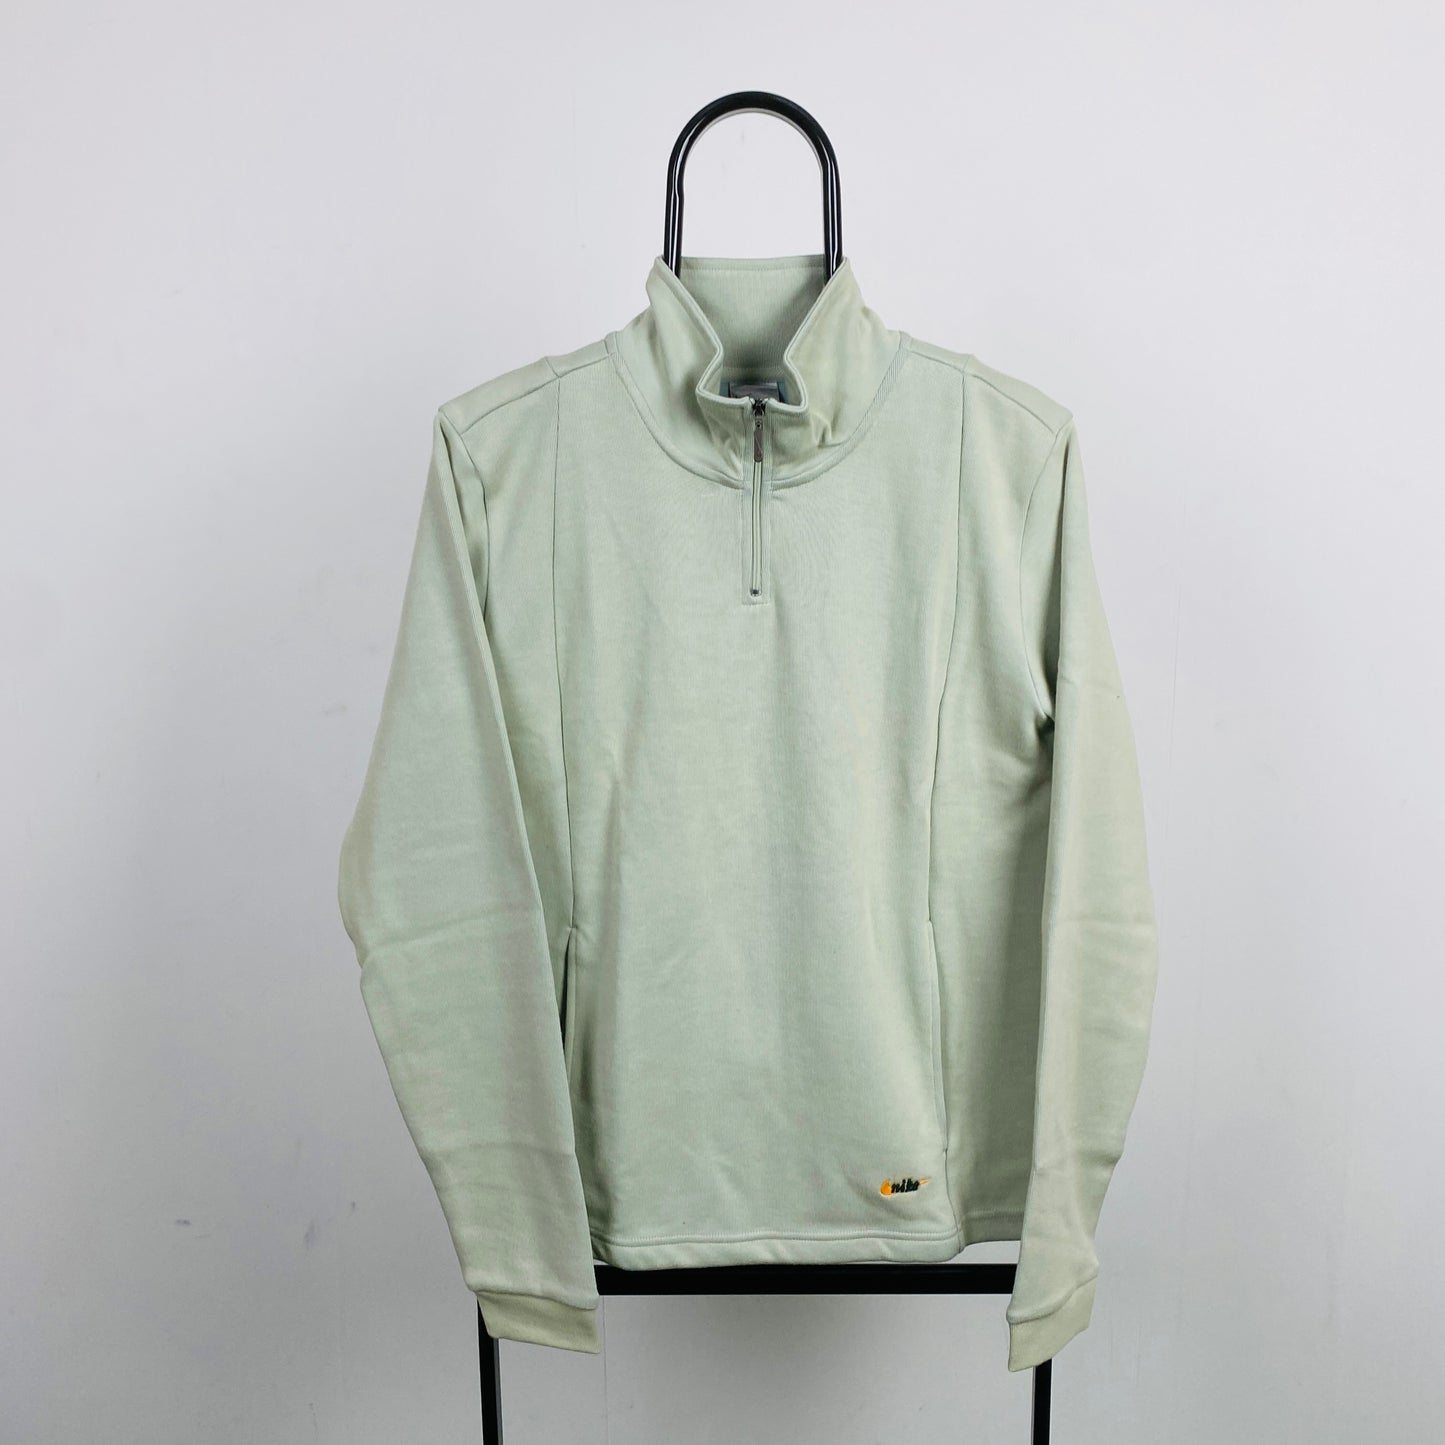 00s Nike 1/4 Zip Sweatshirt Grey Small